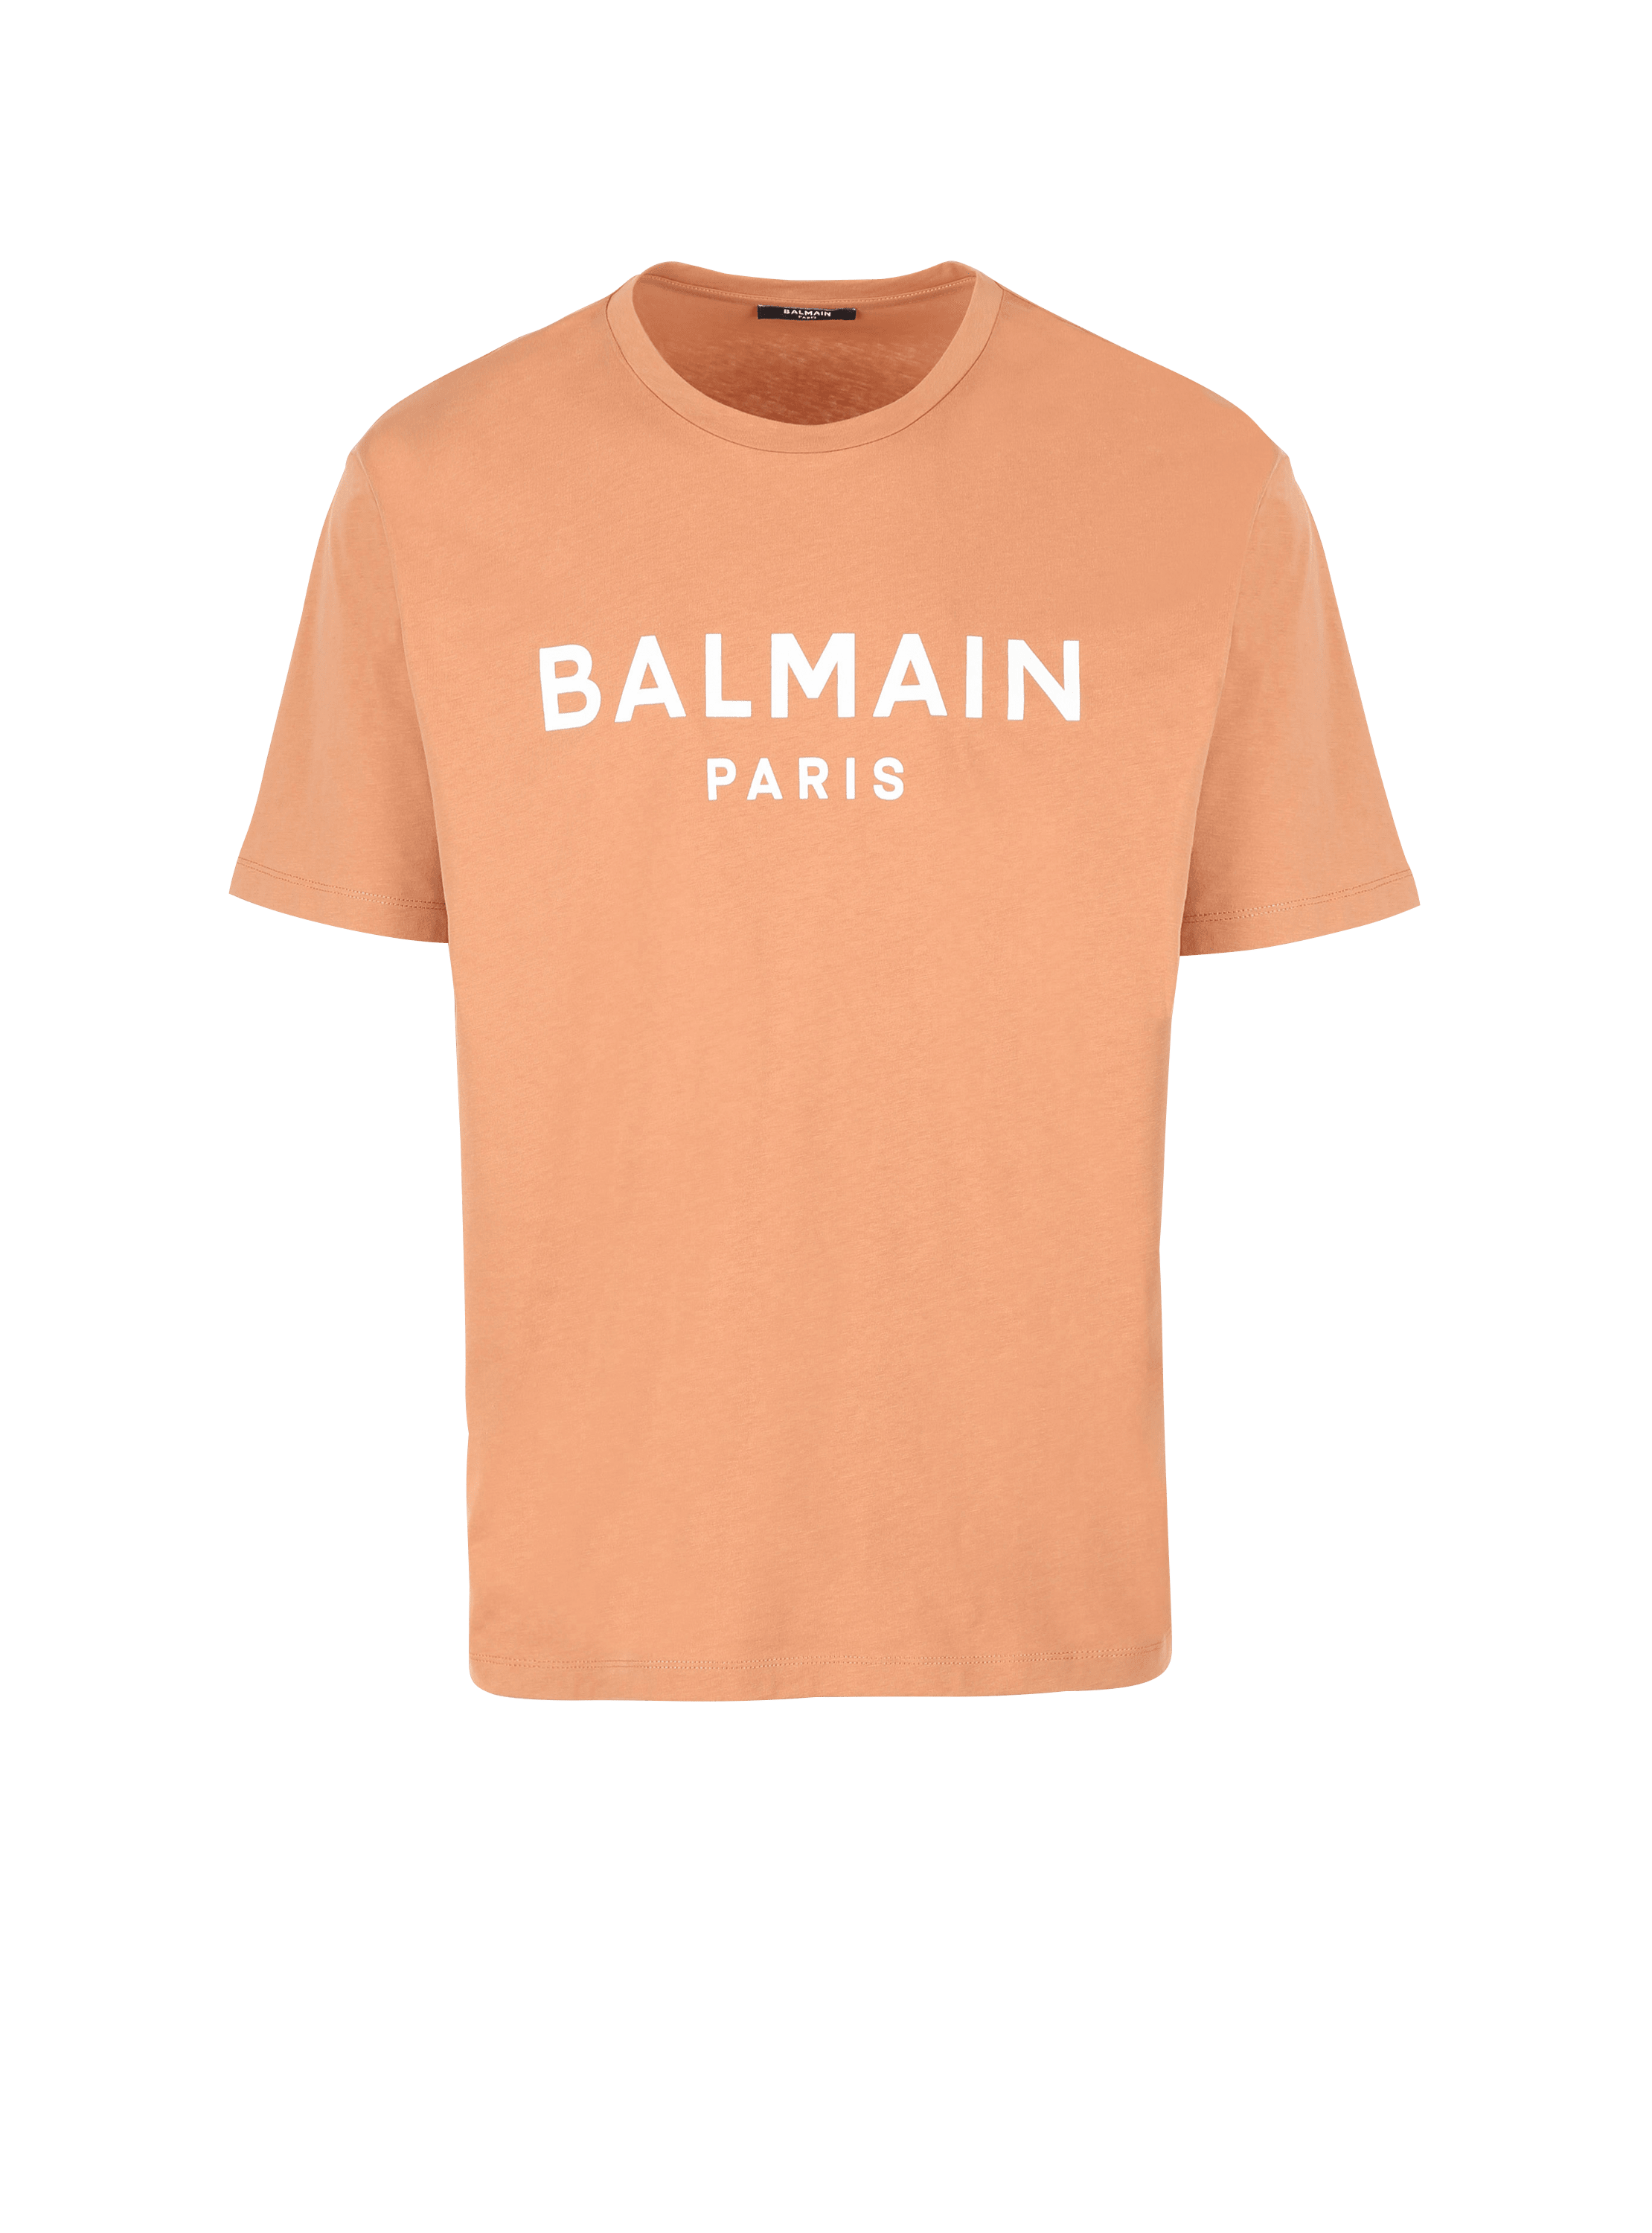 T-shirt à logo Balmain imprimé, marron, hi-res